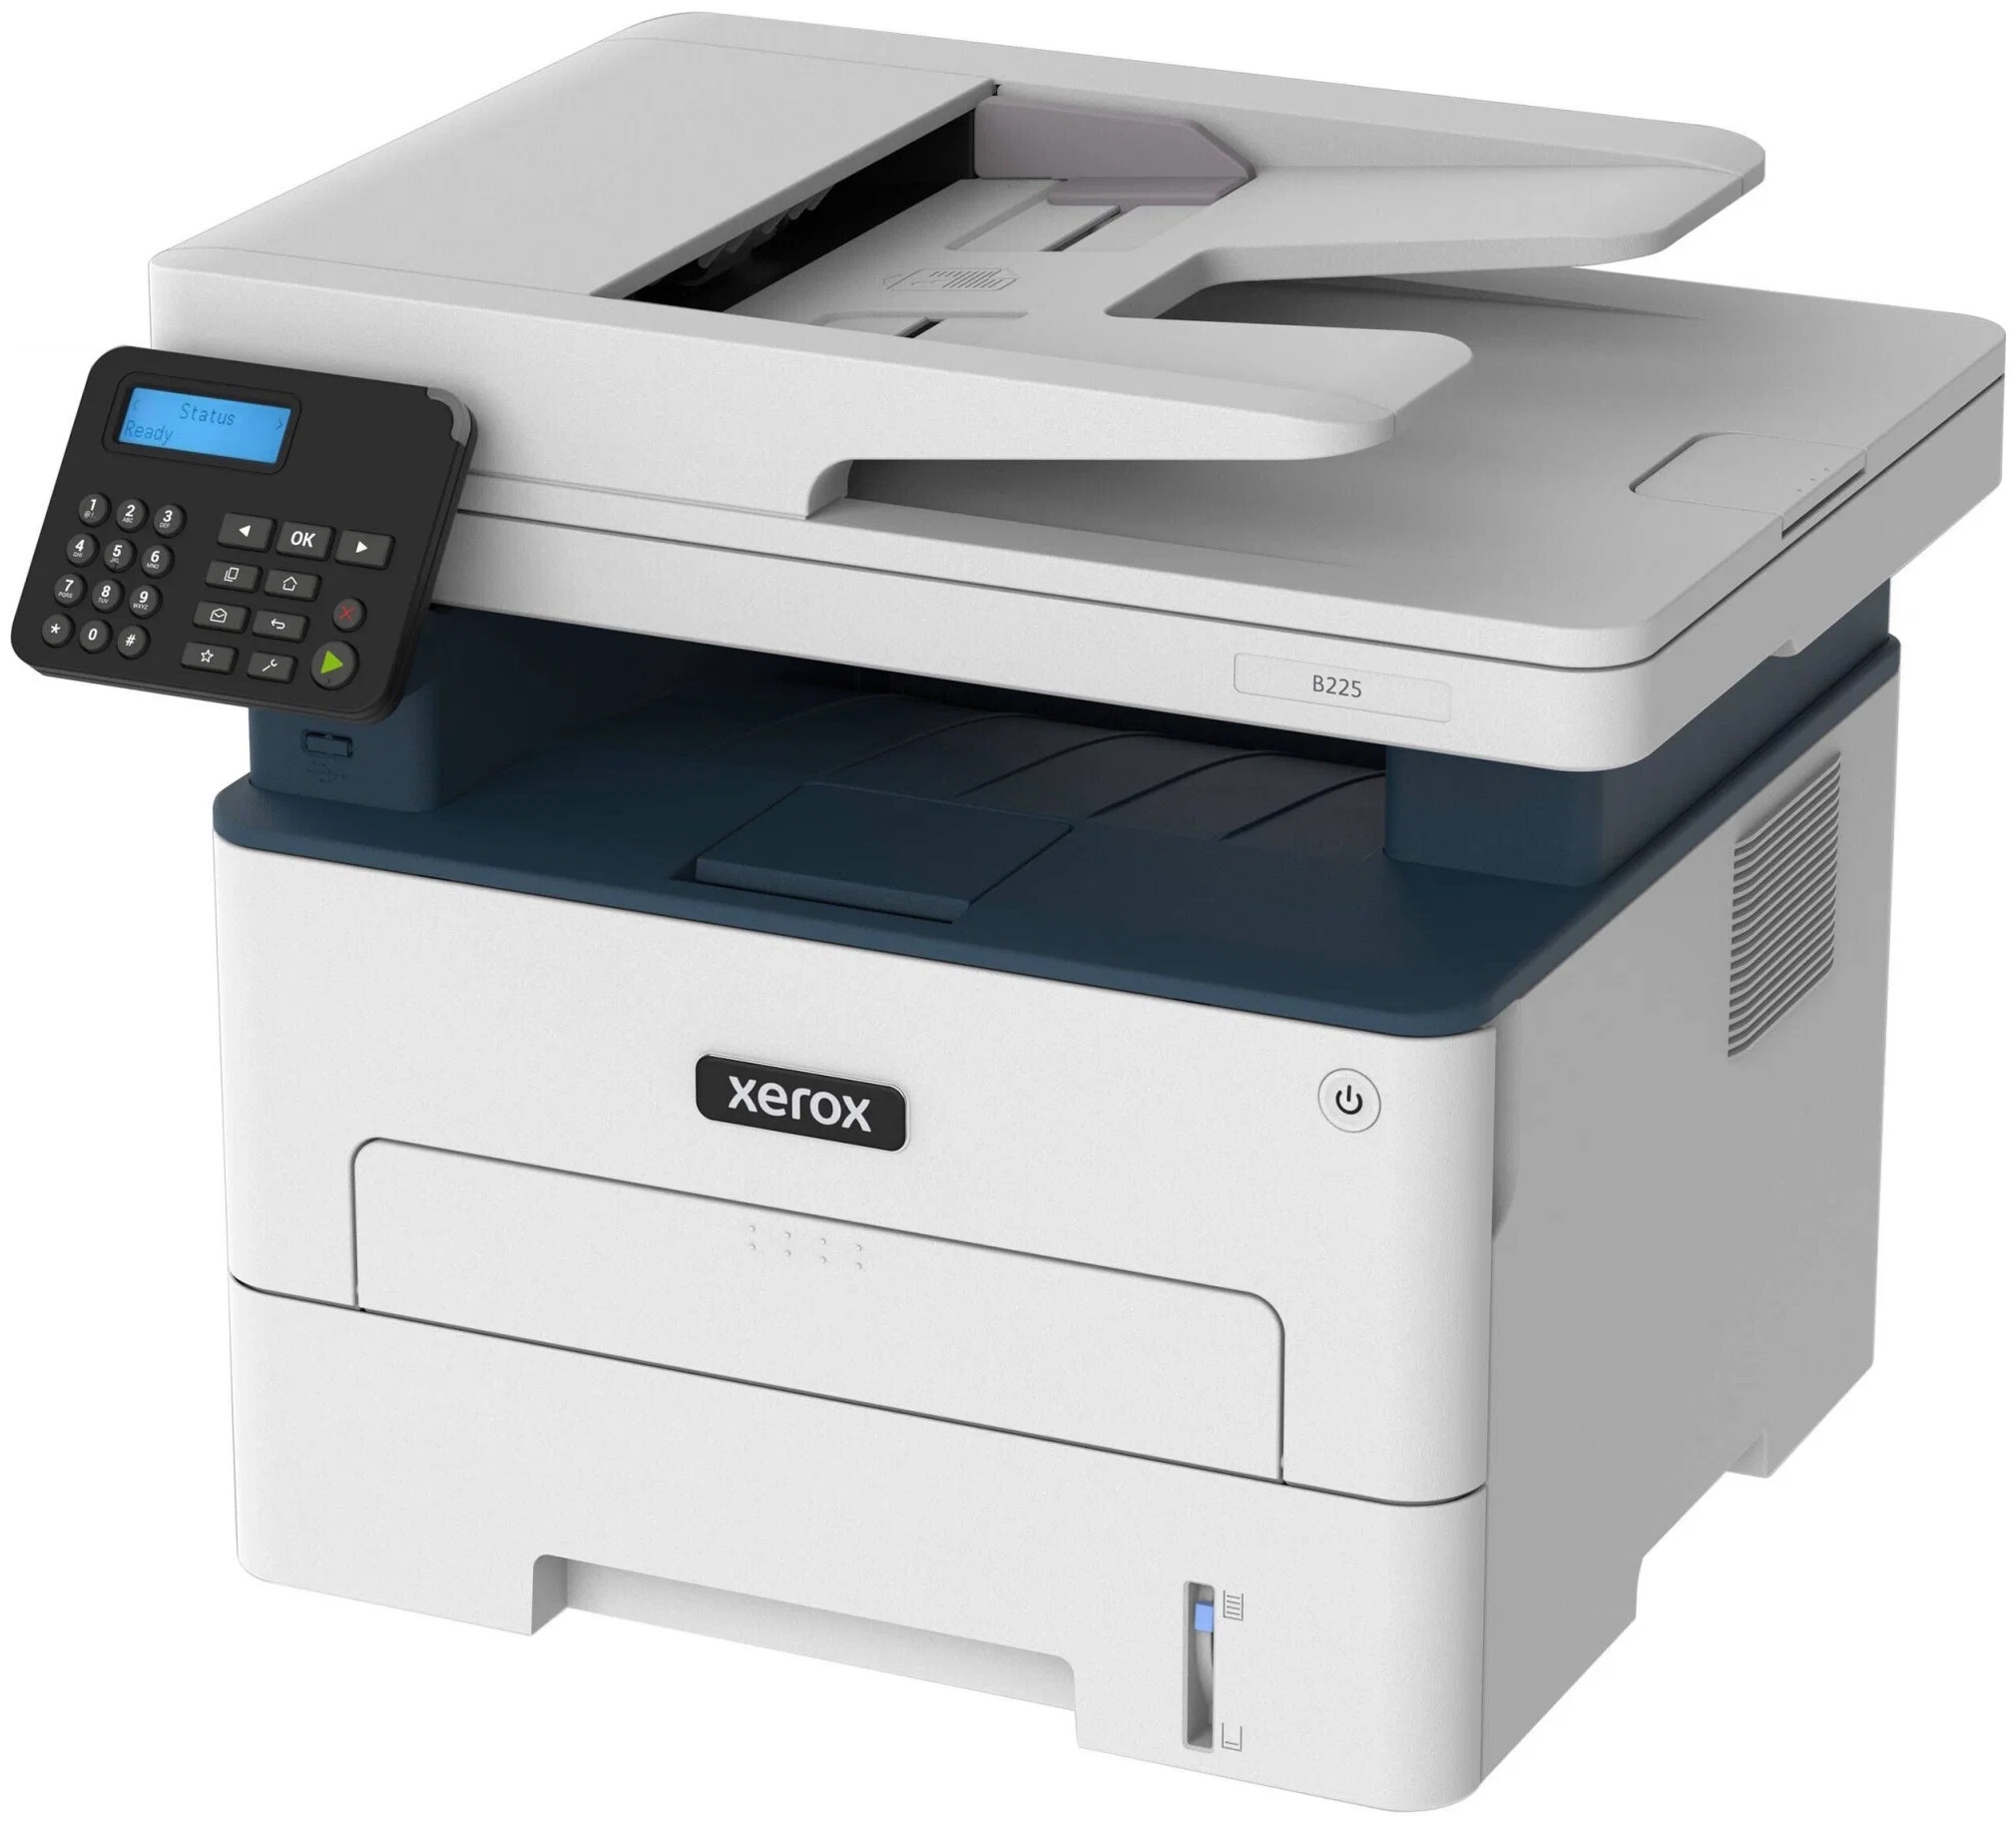 МФУ Xerox B225, Тип печати: лазерный, Цветность печати: черно-белая, Максимальный формат: A4, автоматическая двусторонняя печать